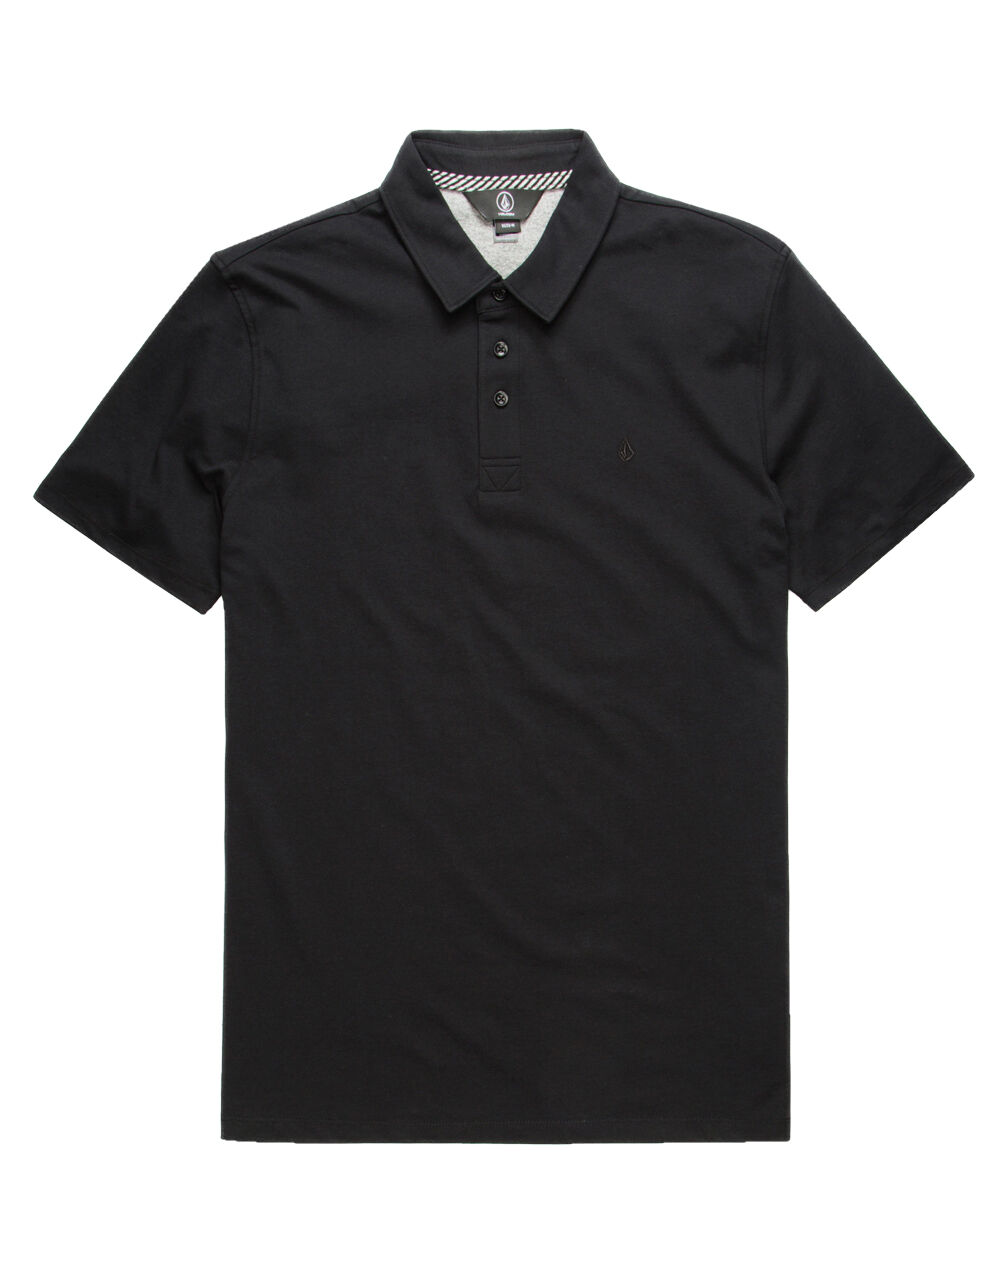 889623575276 UPC - Volcom Wowzer Black Polo Shirt | UPC Lookup